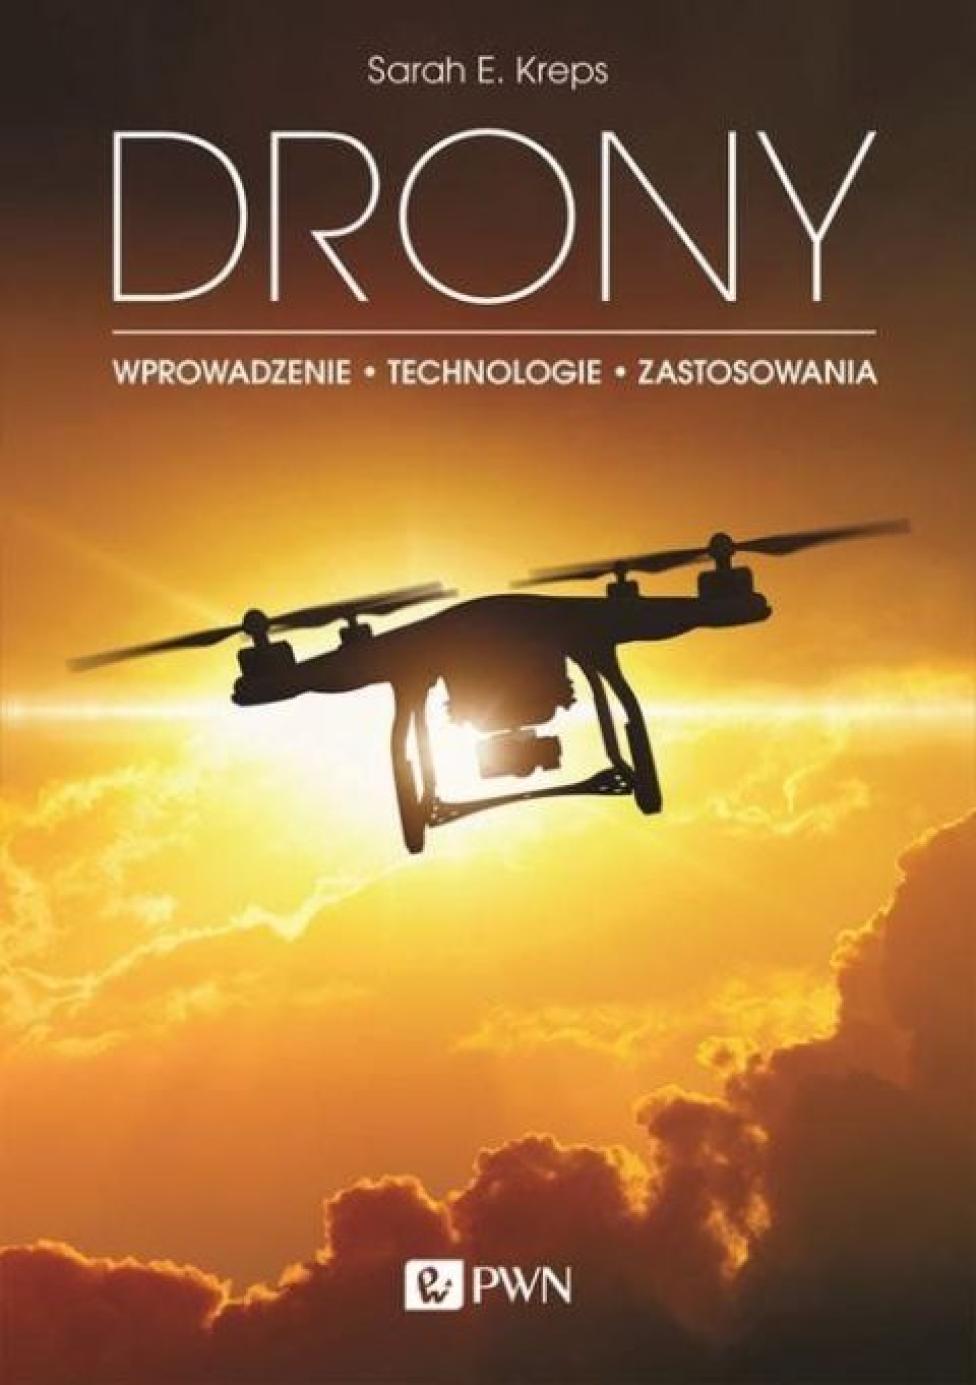 Książka "Drony. Wprowadzenie. Technologie. Zastosowania" (fot. Wydawnictwo Naukowe PWN)